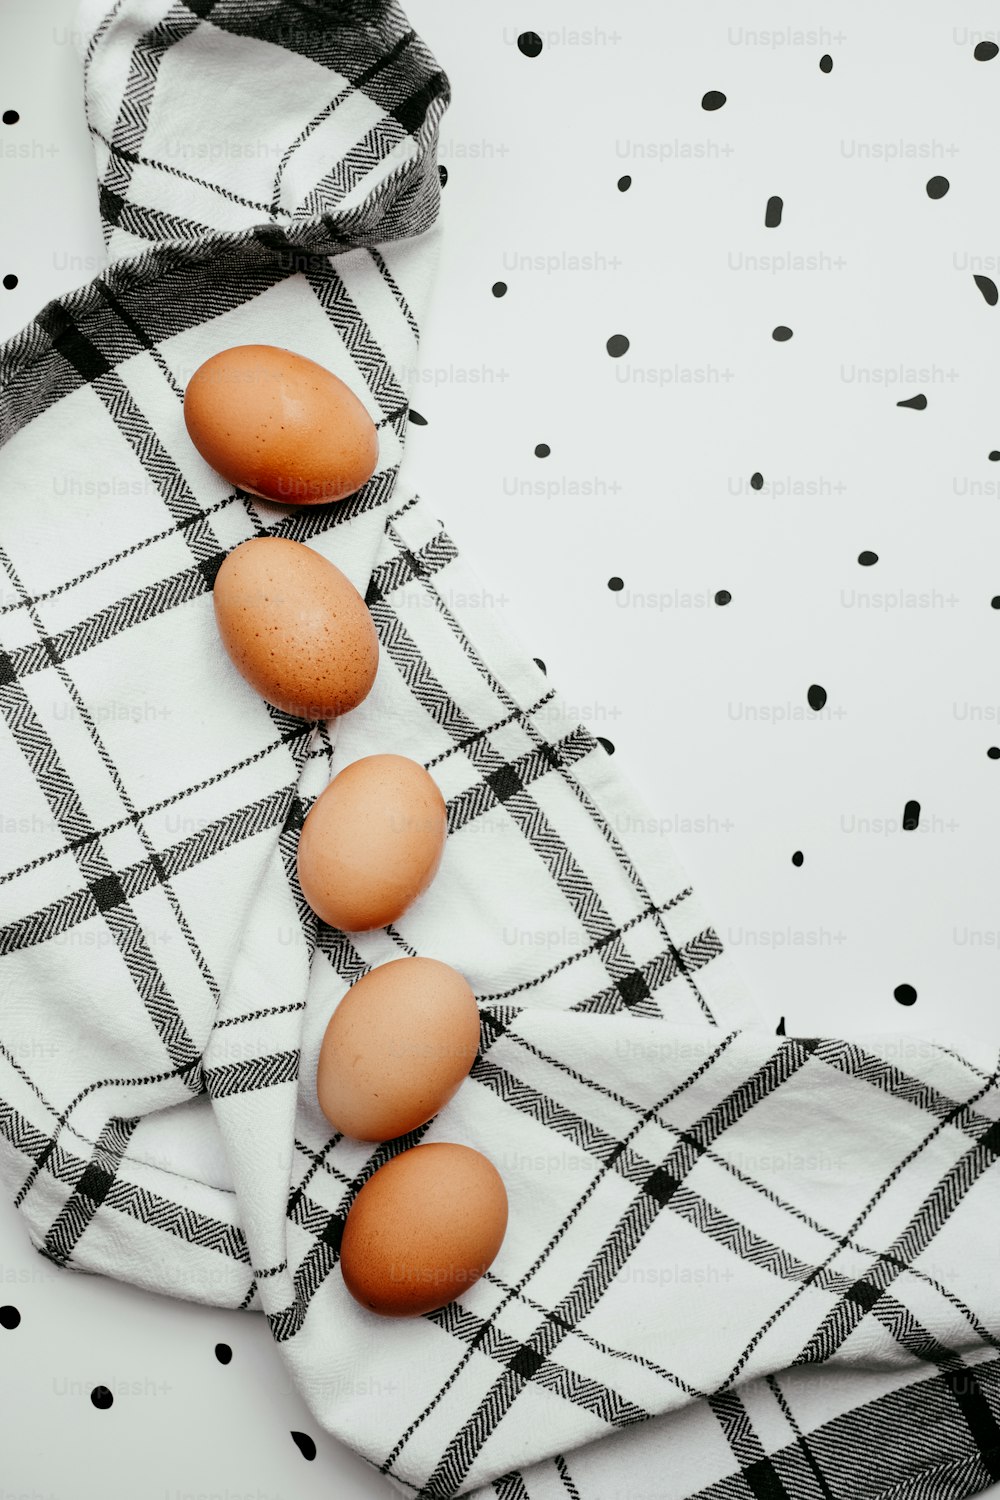 Tres huevos están sentados en una toalla sobre una mesa